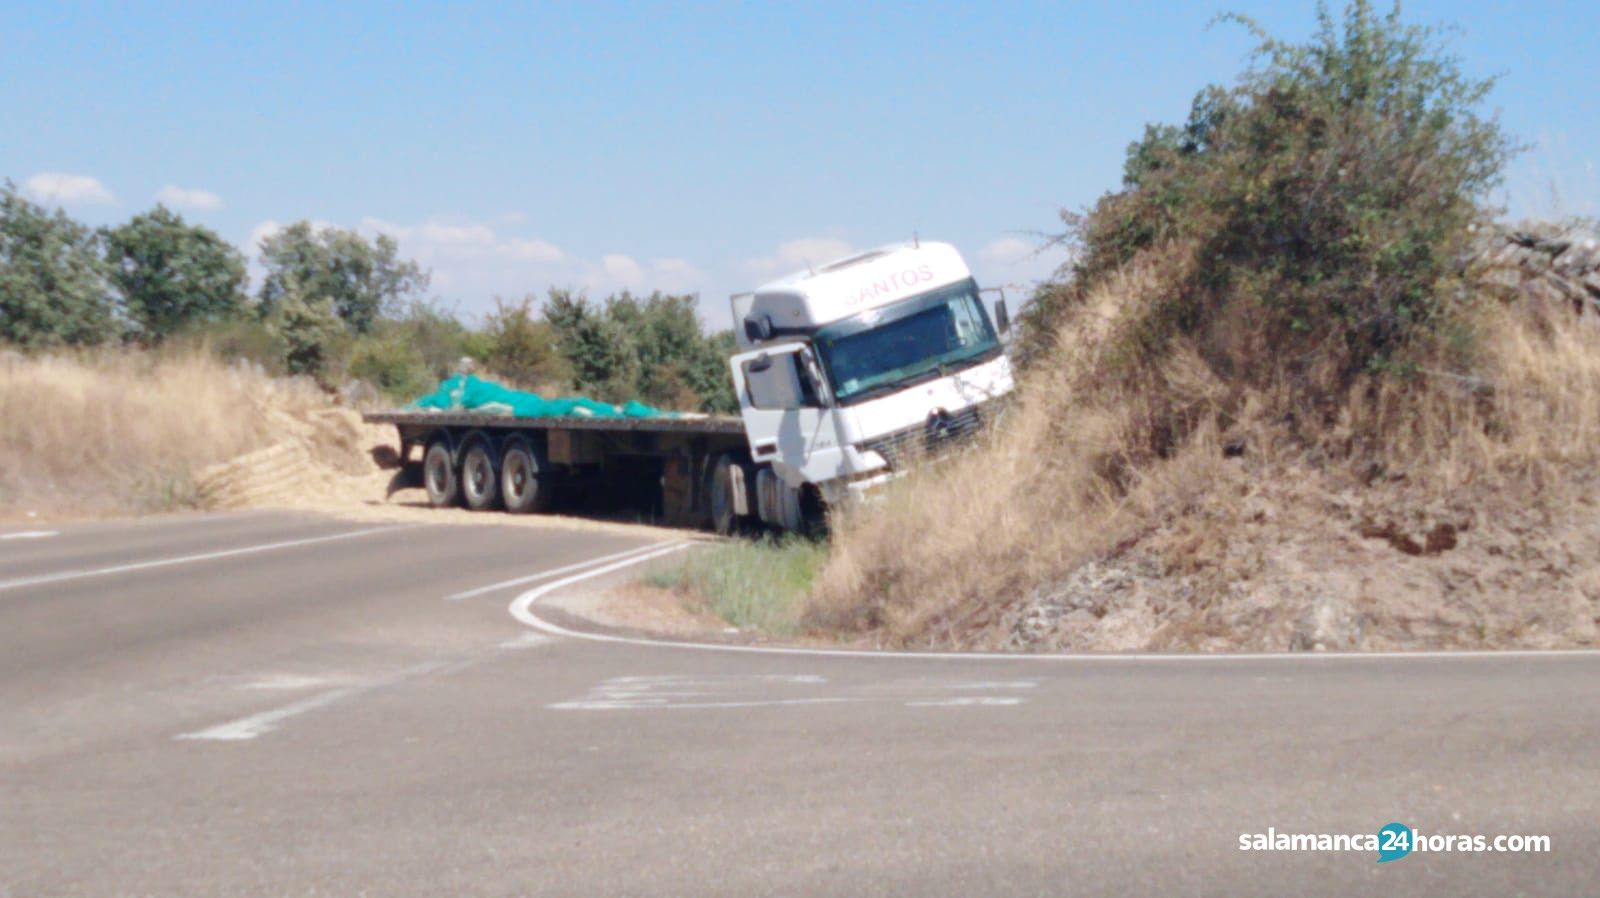  Accidente Camión Peralejos (2) 